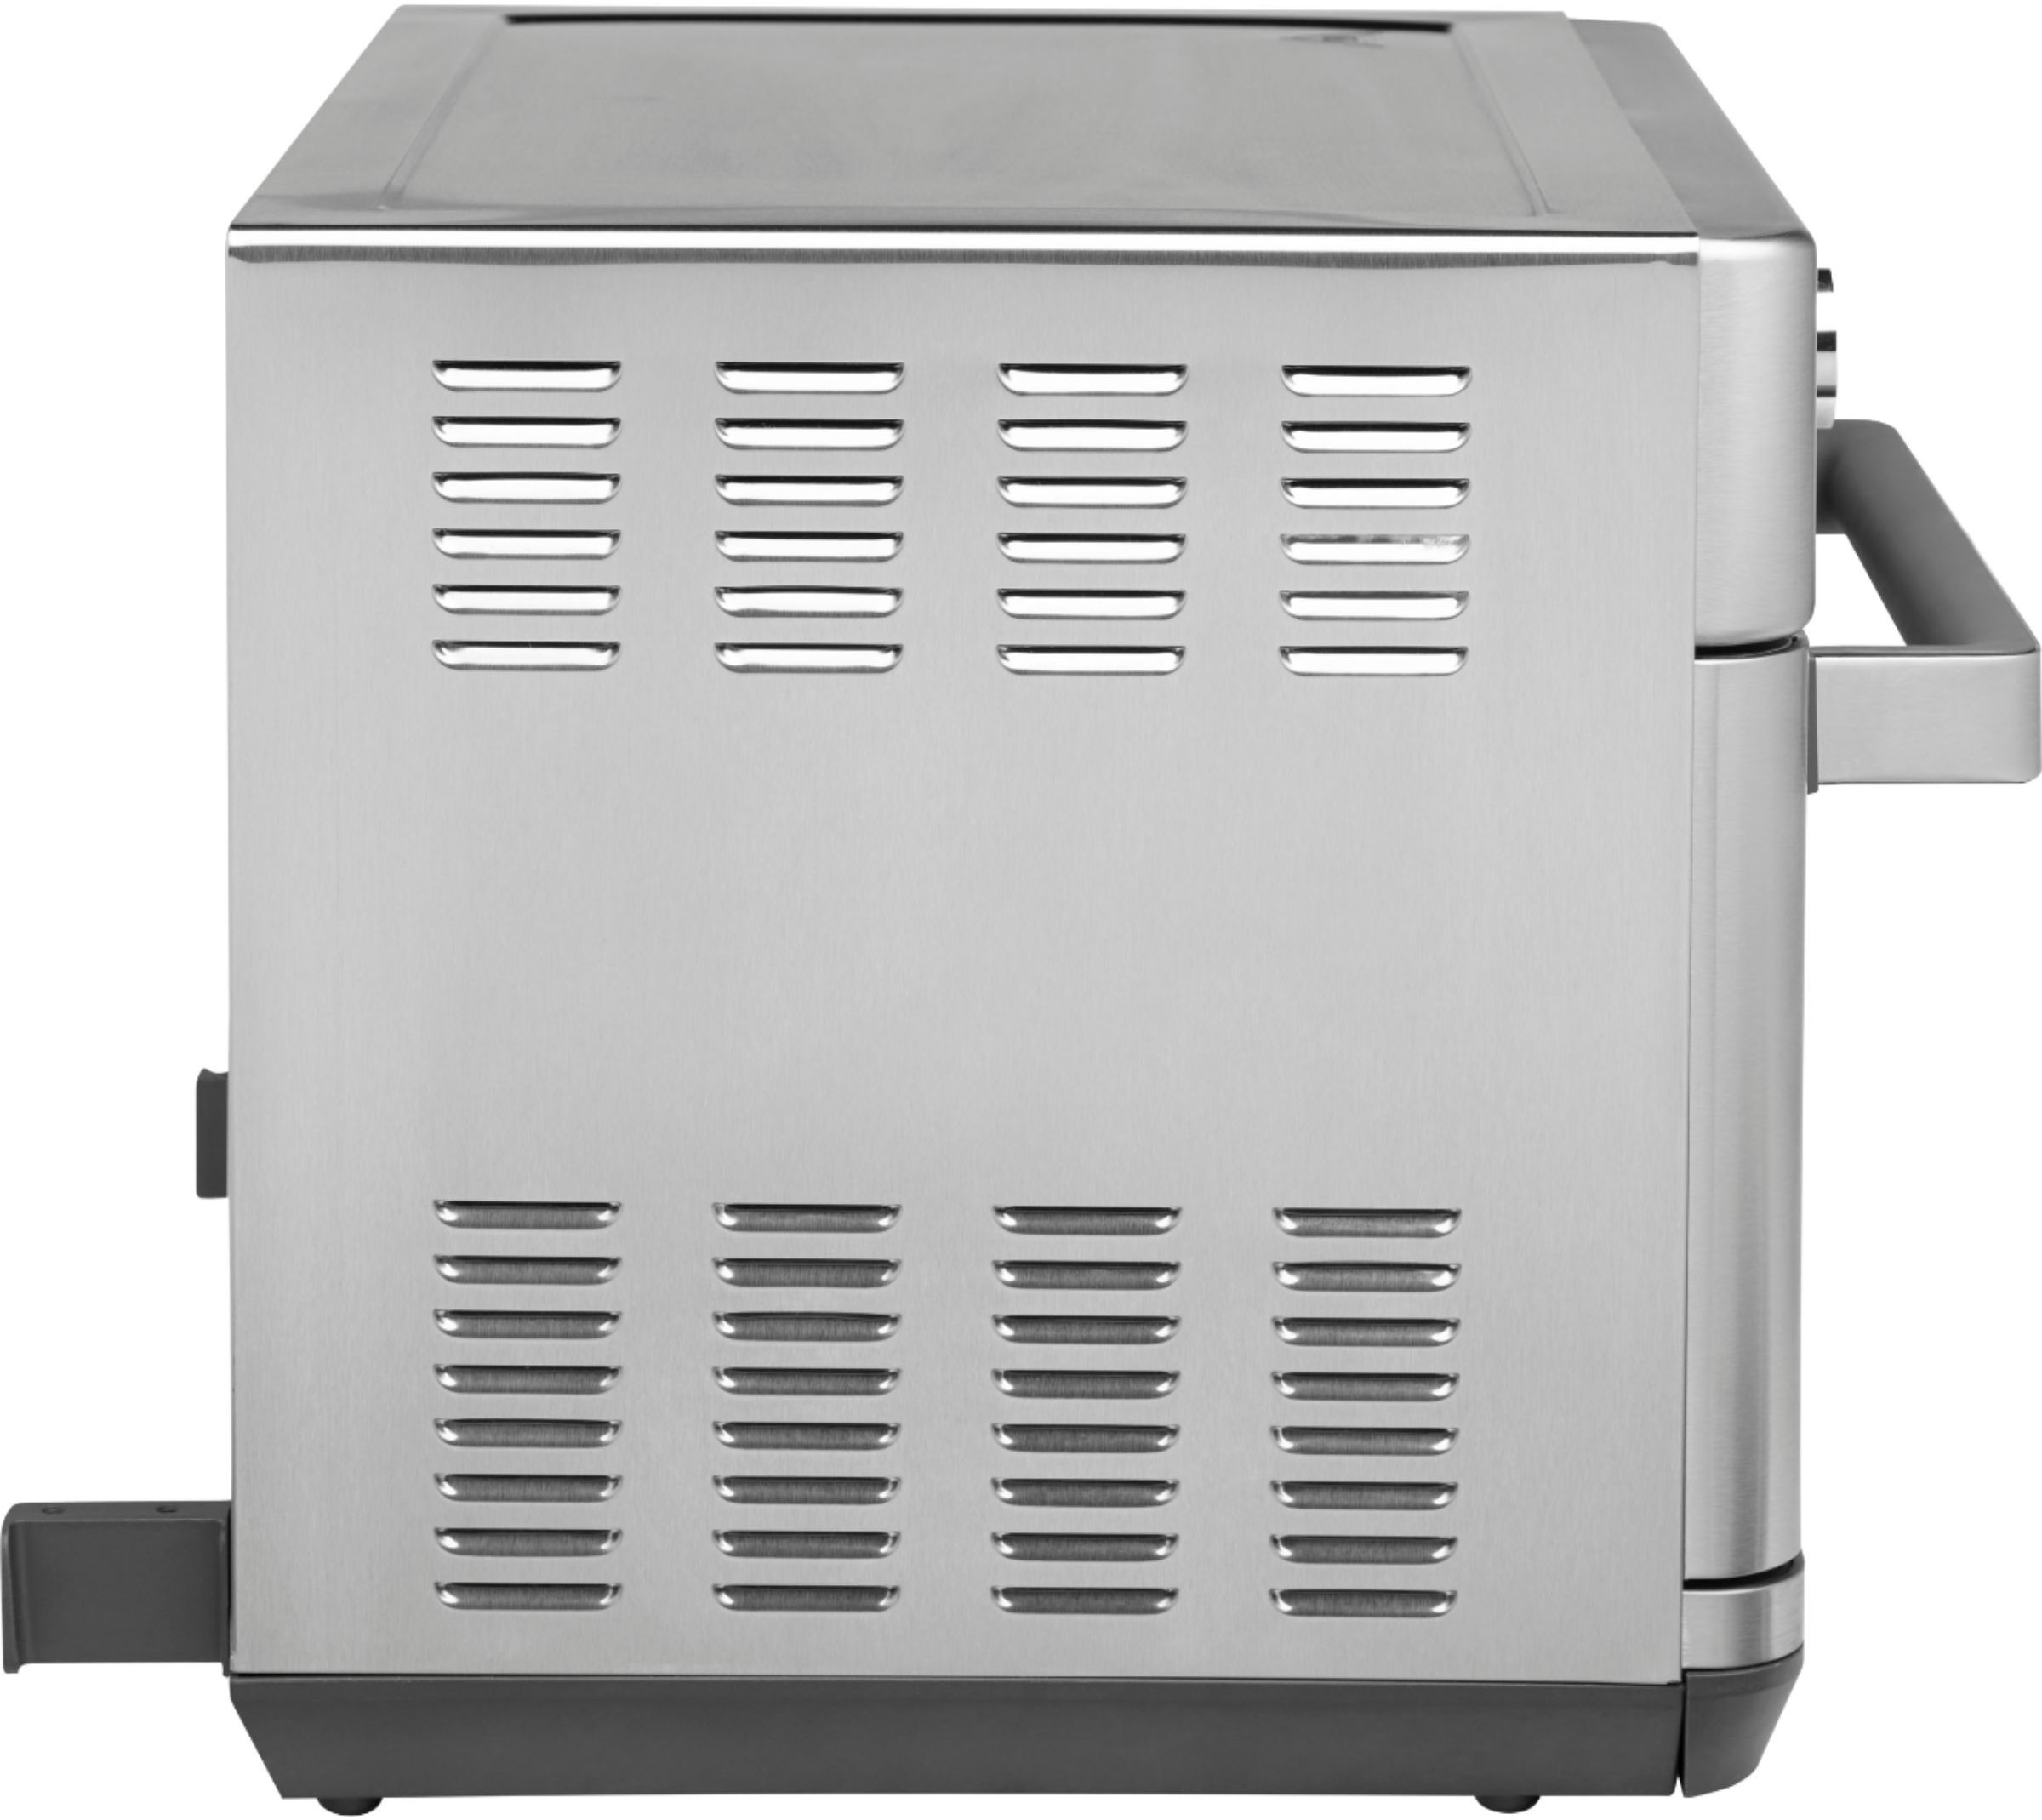 Best Buy: Gourmia 12-in-1 Digital Air Fryer Toaster Oven Black GTF7355